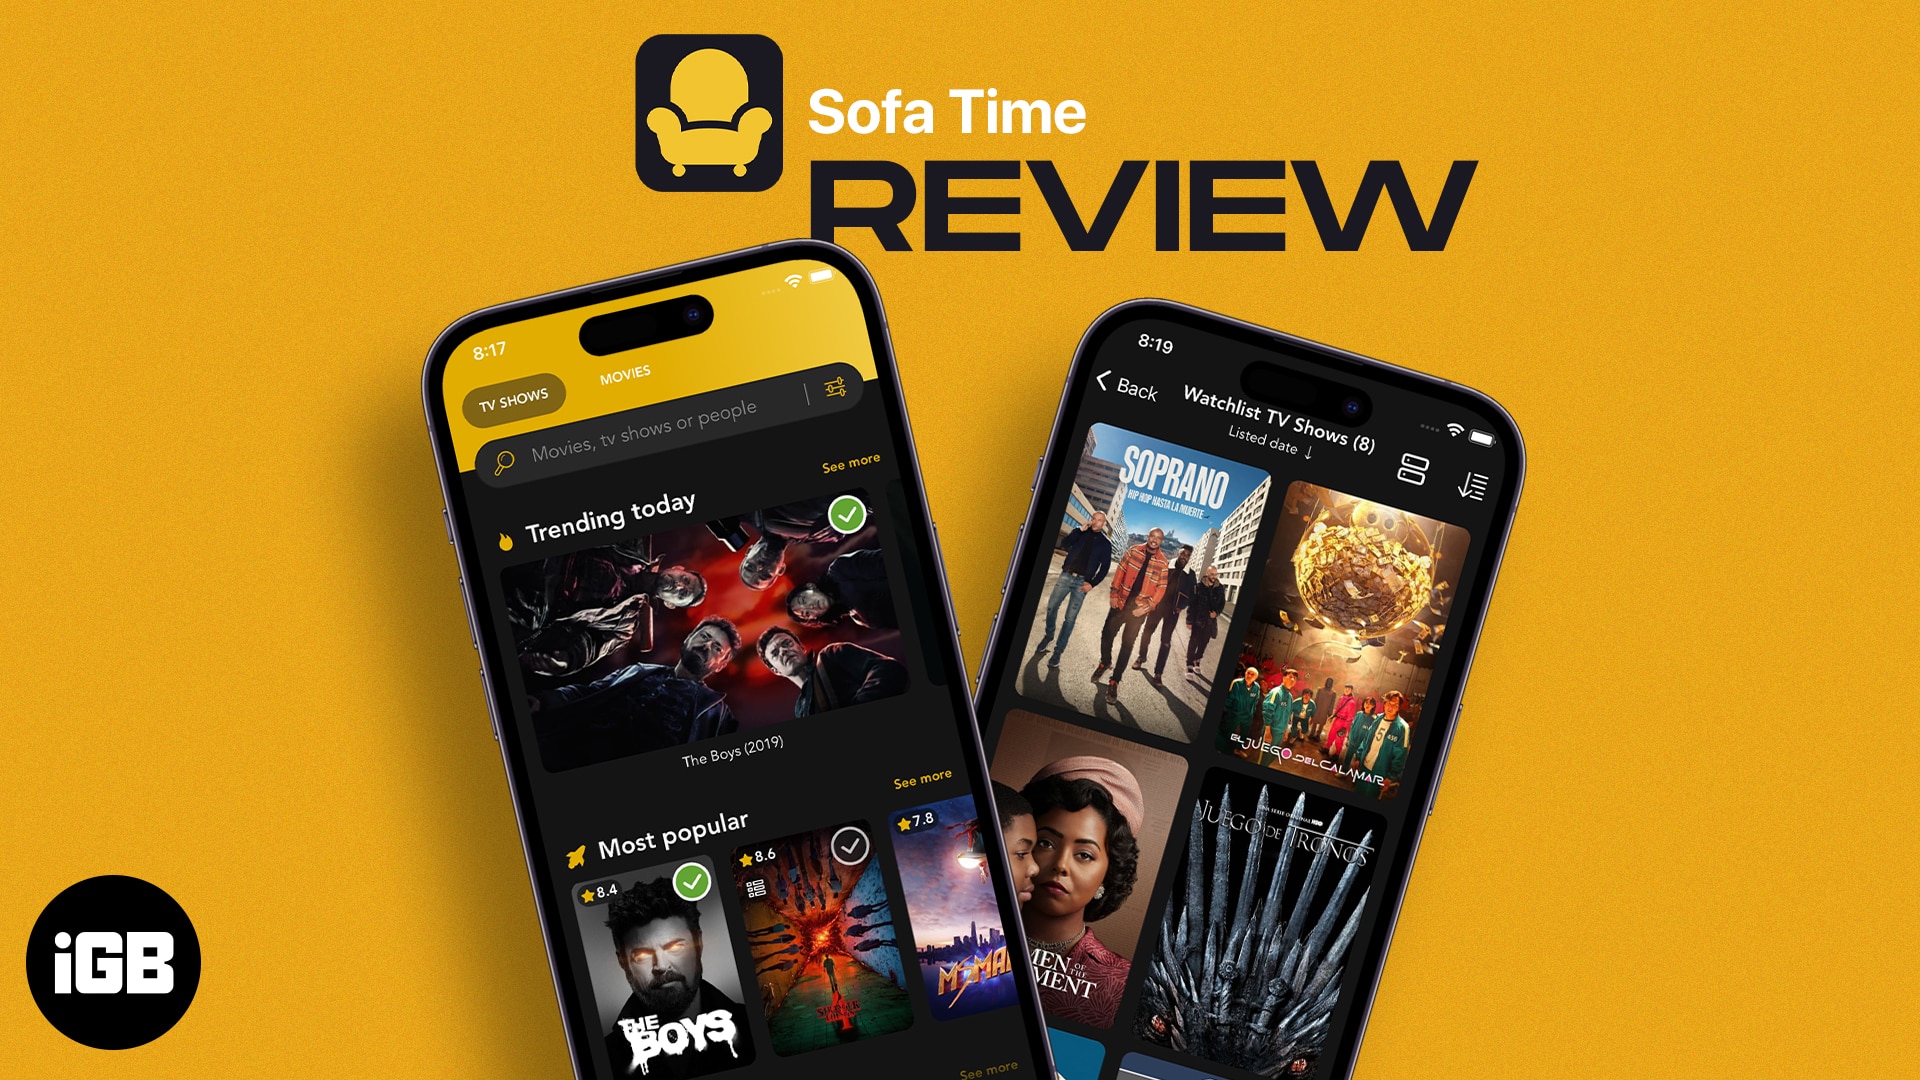 Sofa time ios app review